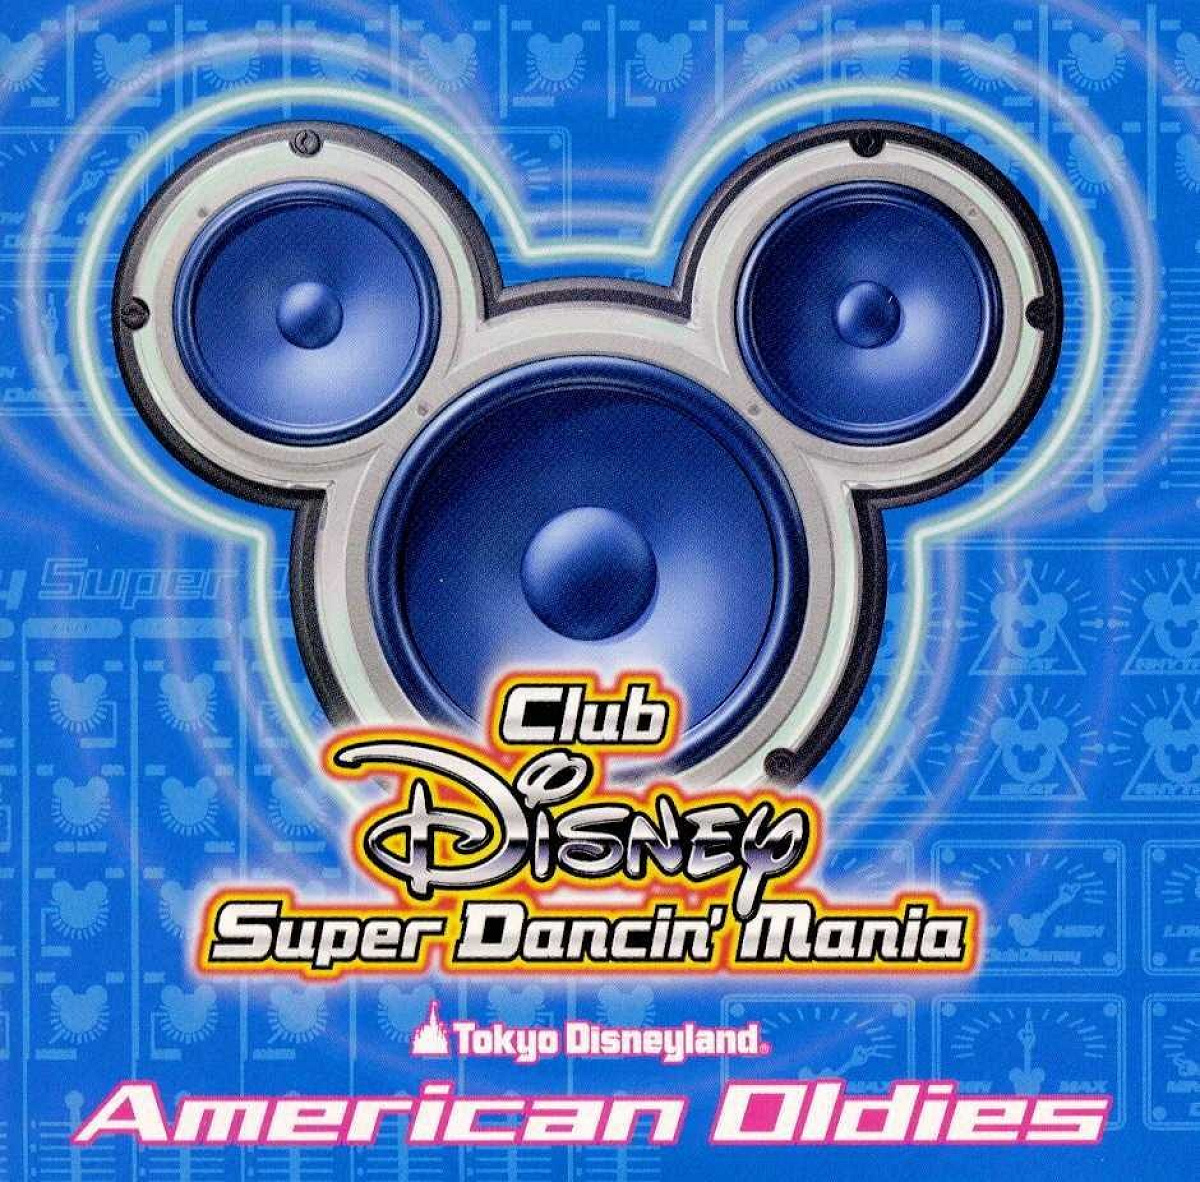 「Club Disneyスーパーダンシン・マニア」3stステージ曲は「アメリカン・オールディーズ」